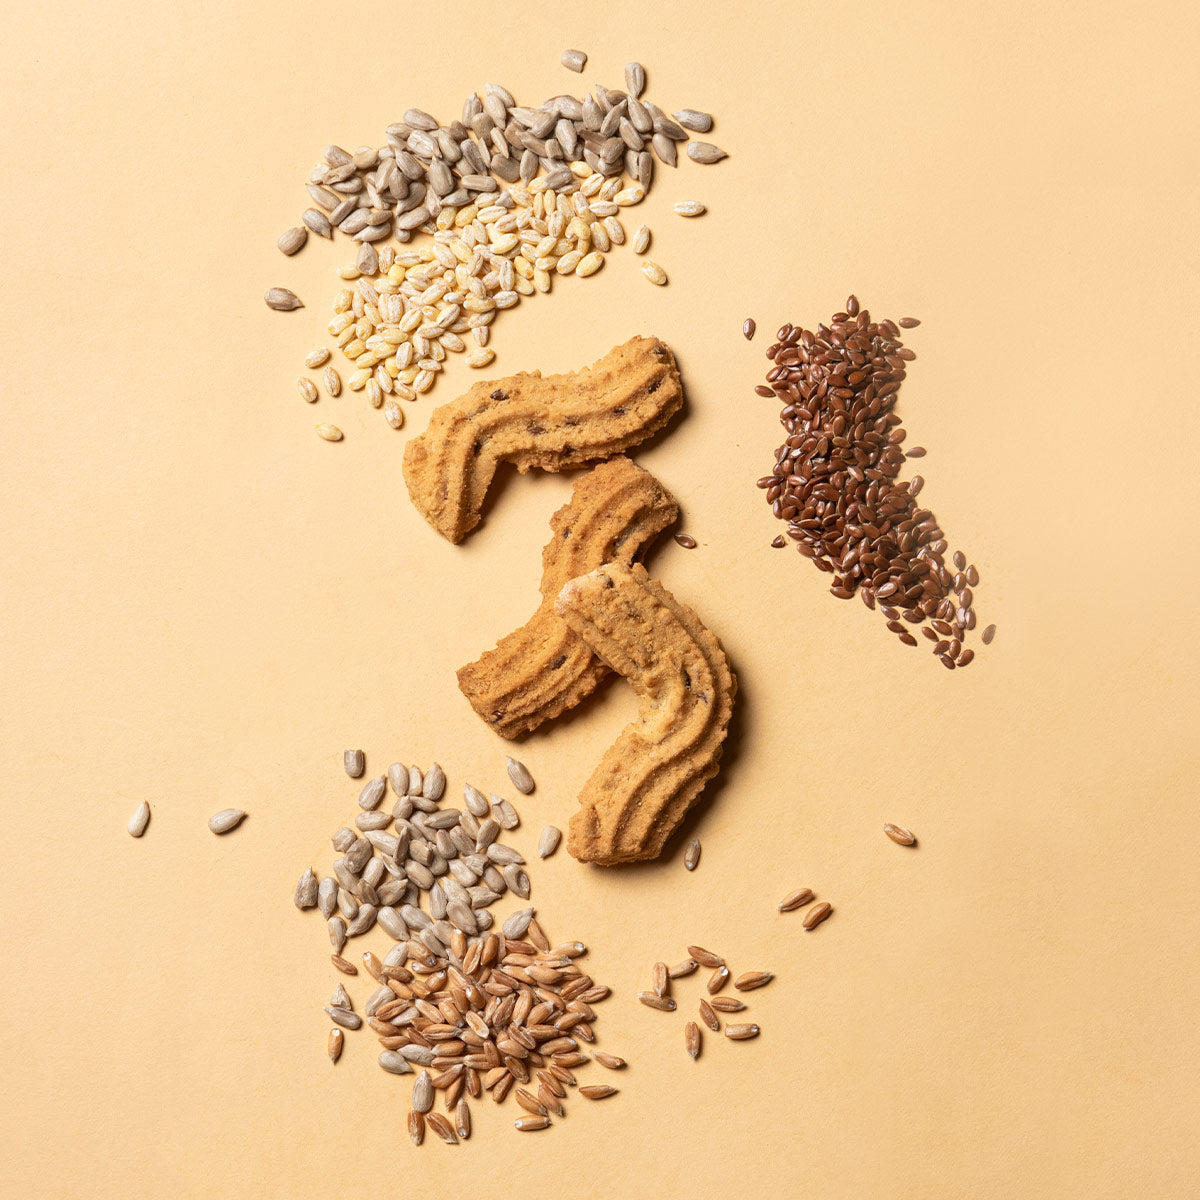 Biscuits Cereals and Seeds